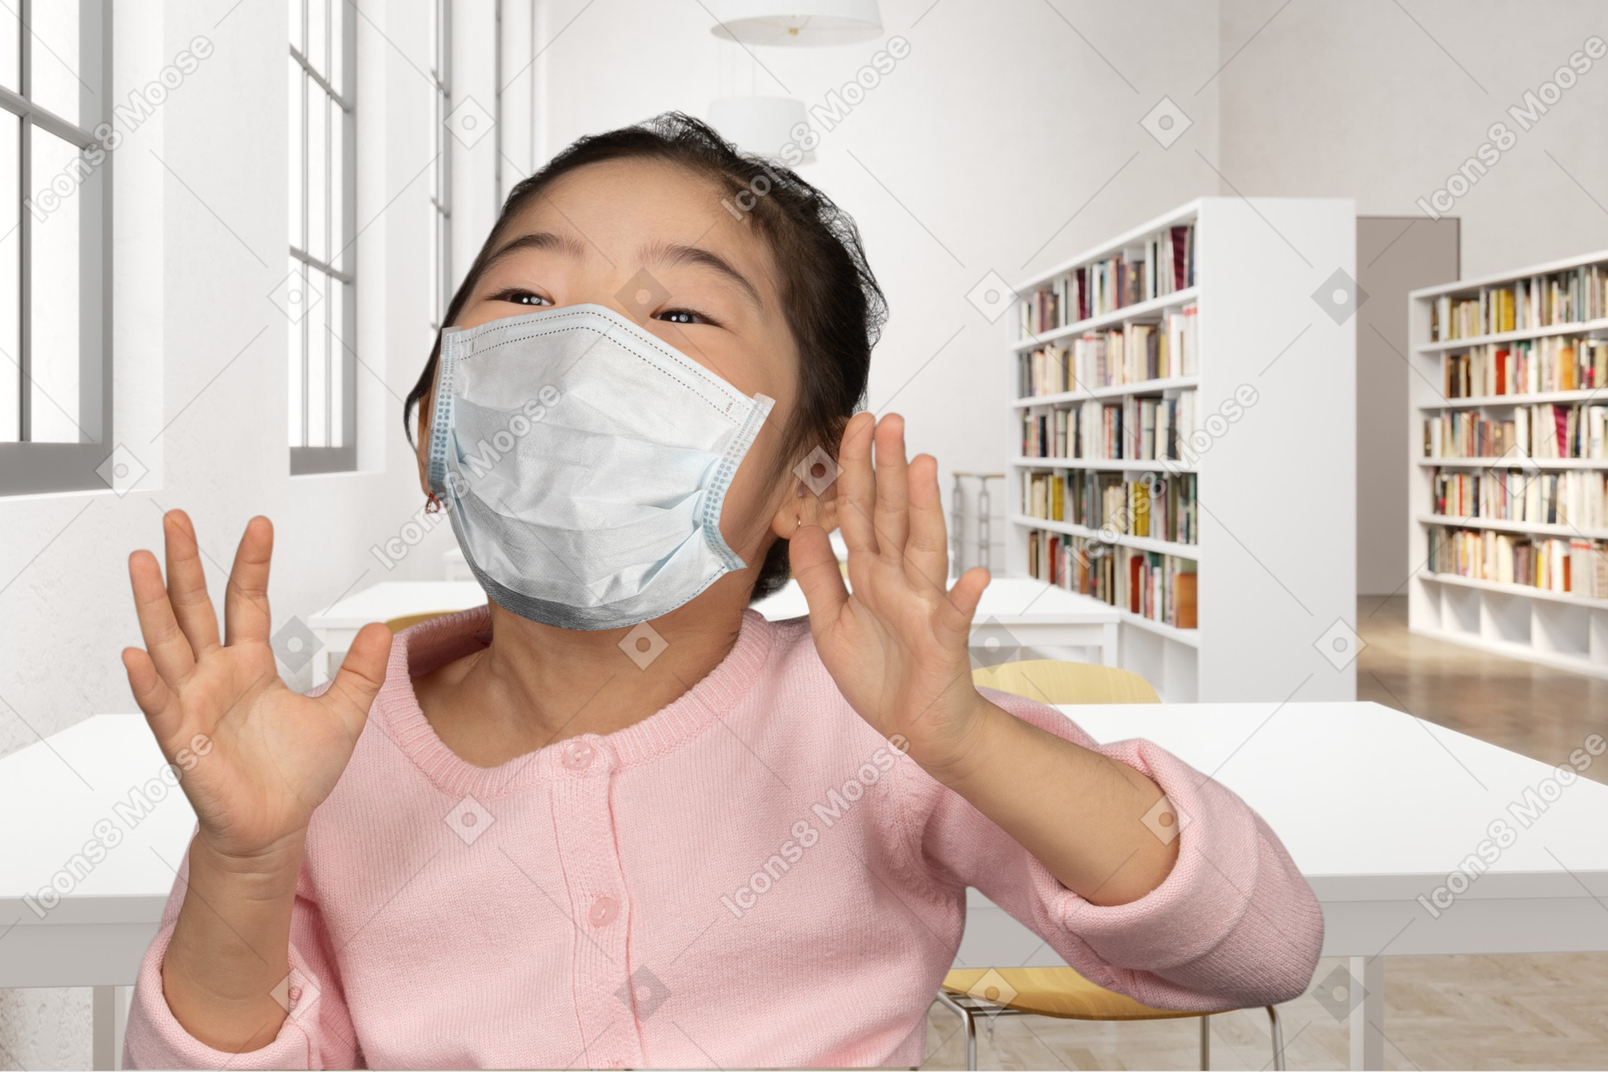 Menina alegre com máscara facial em pé em uma biblioteca